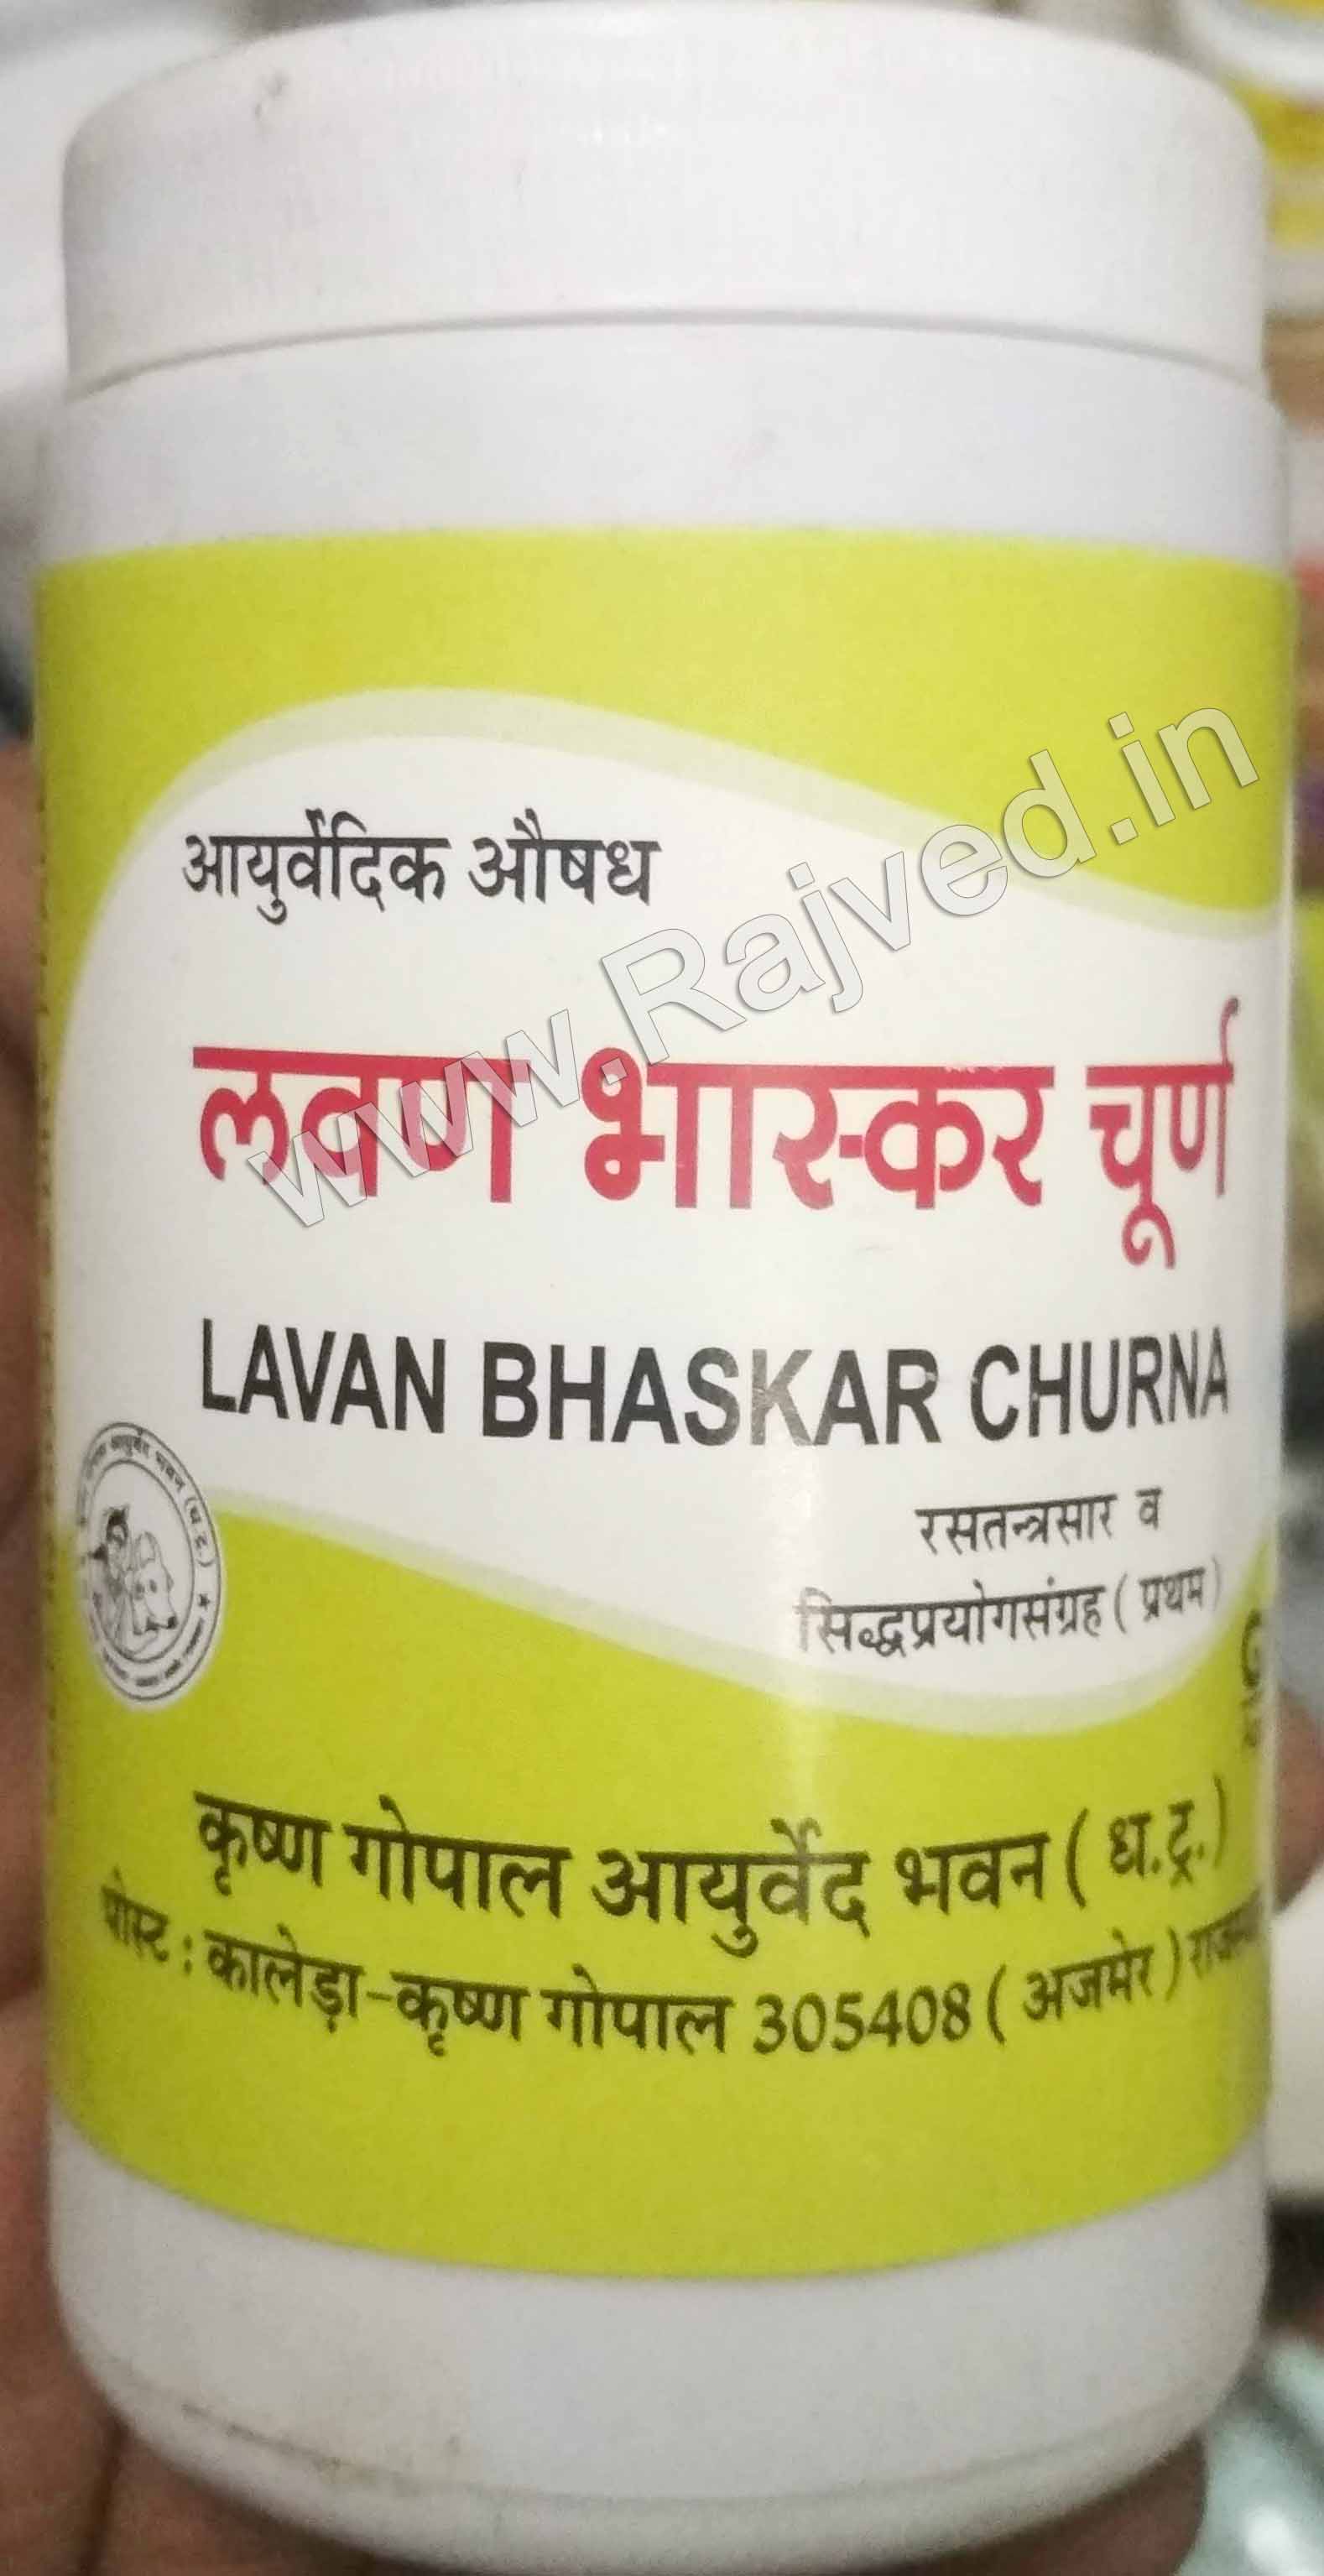 lavan bhaskar churna 100gm upto 20% off Krishna Gopal Ayurved bhavan